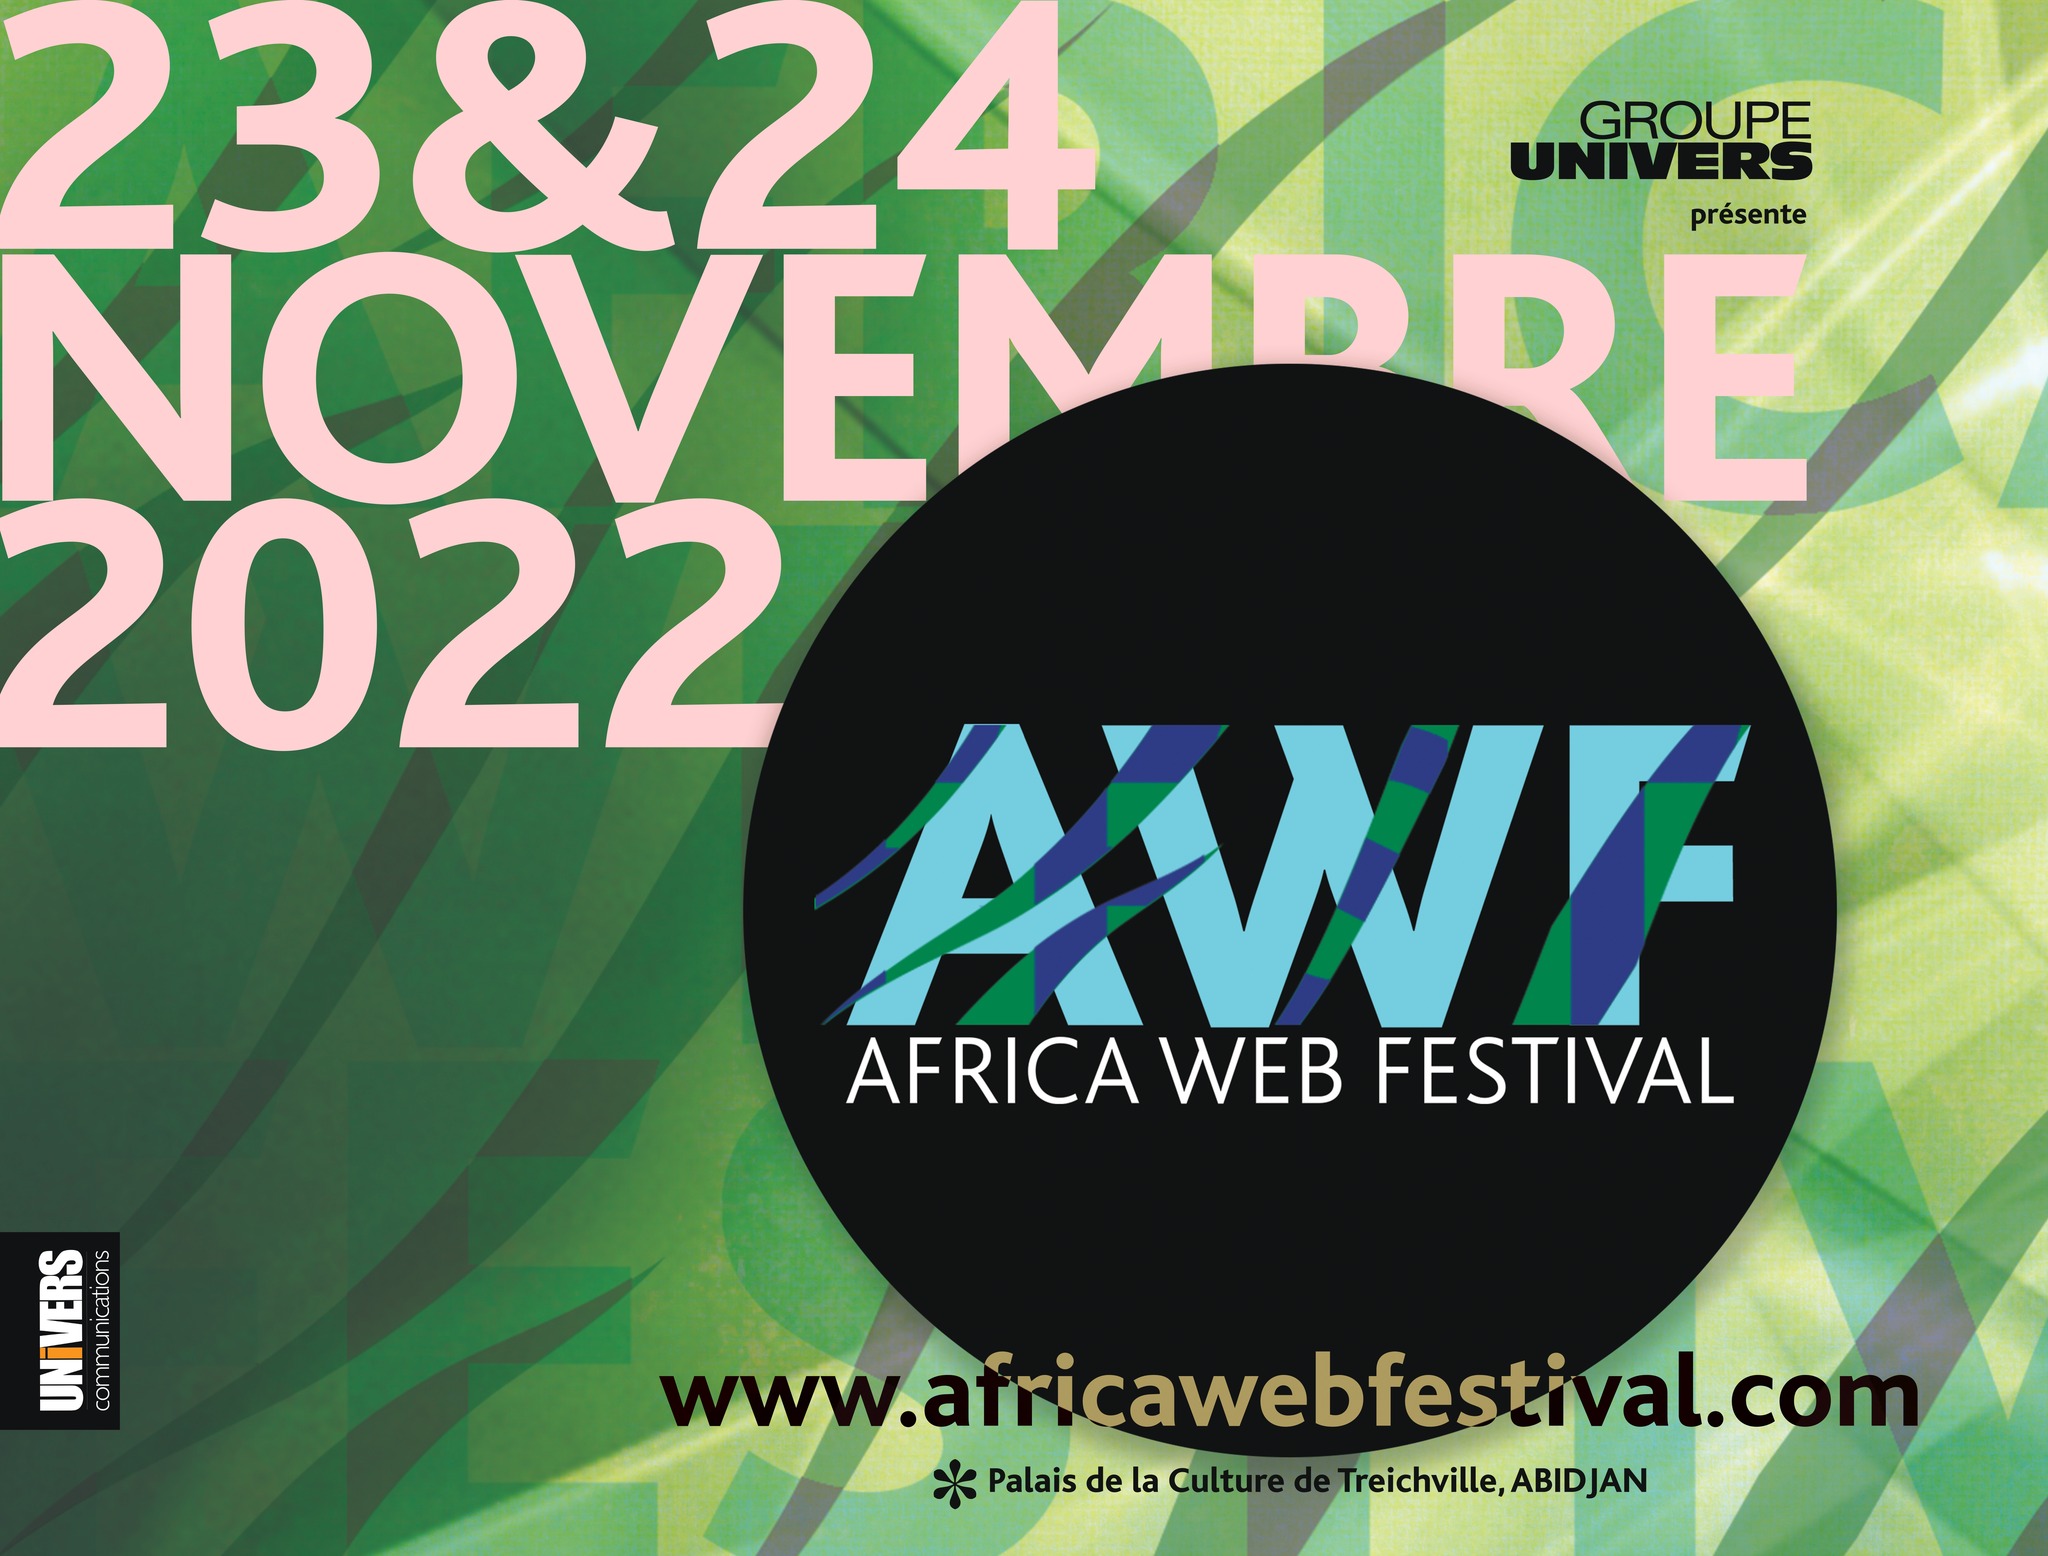 La 9e édition de Africa Web Festival les 23 et 24 Novembre 2022